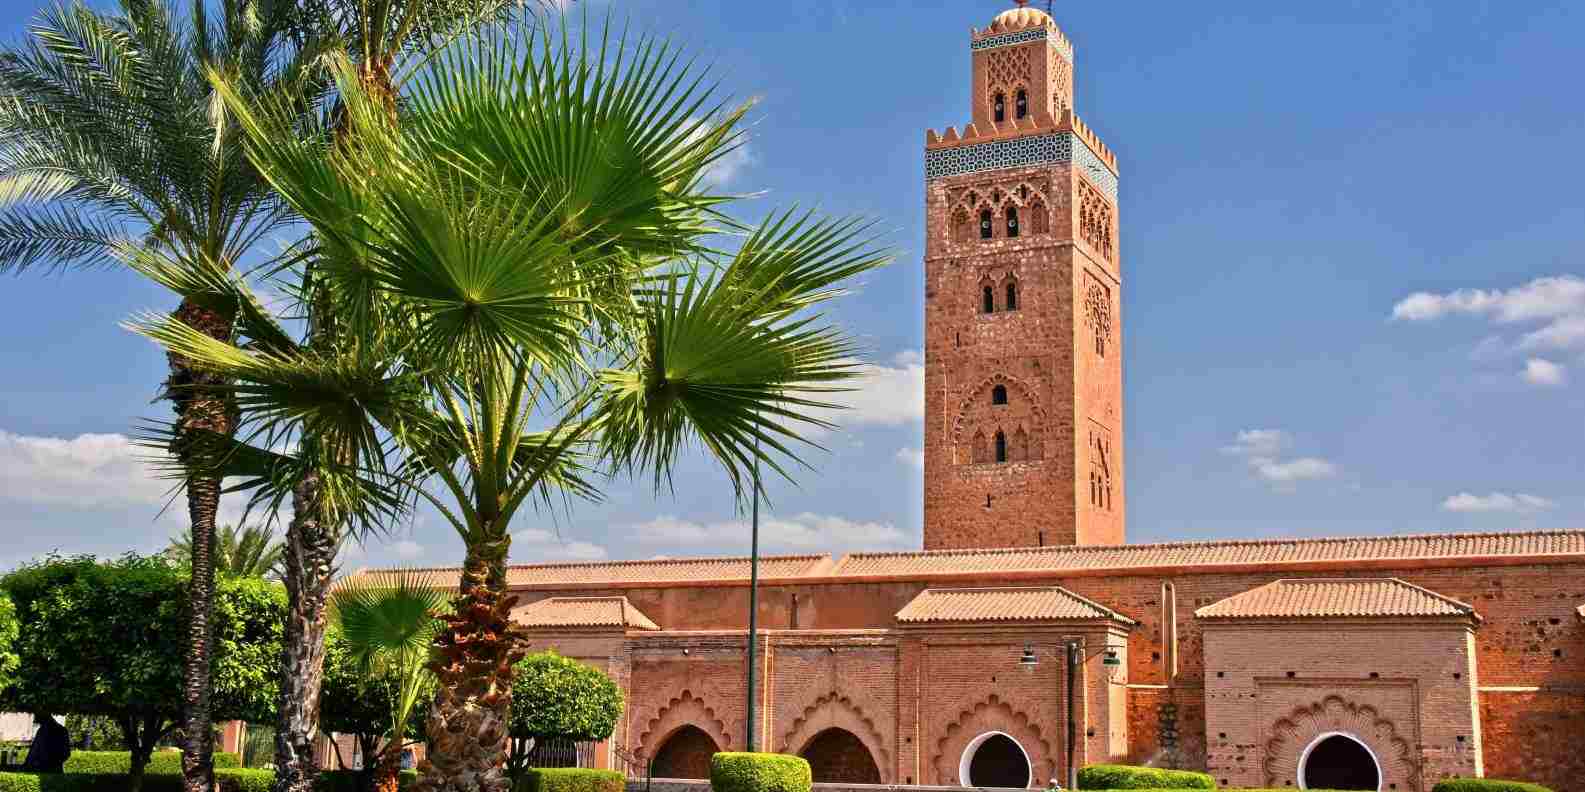 La-mosquée-koutoubia-en-face-des-palmiers-marrakech-maroc.jpg